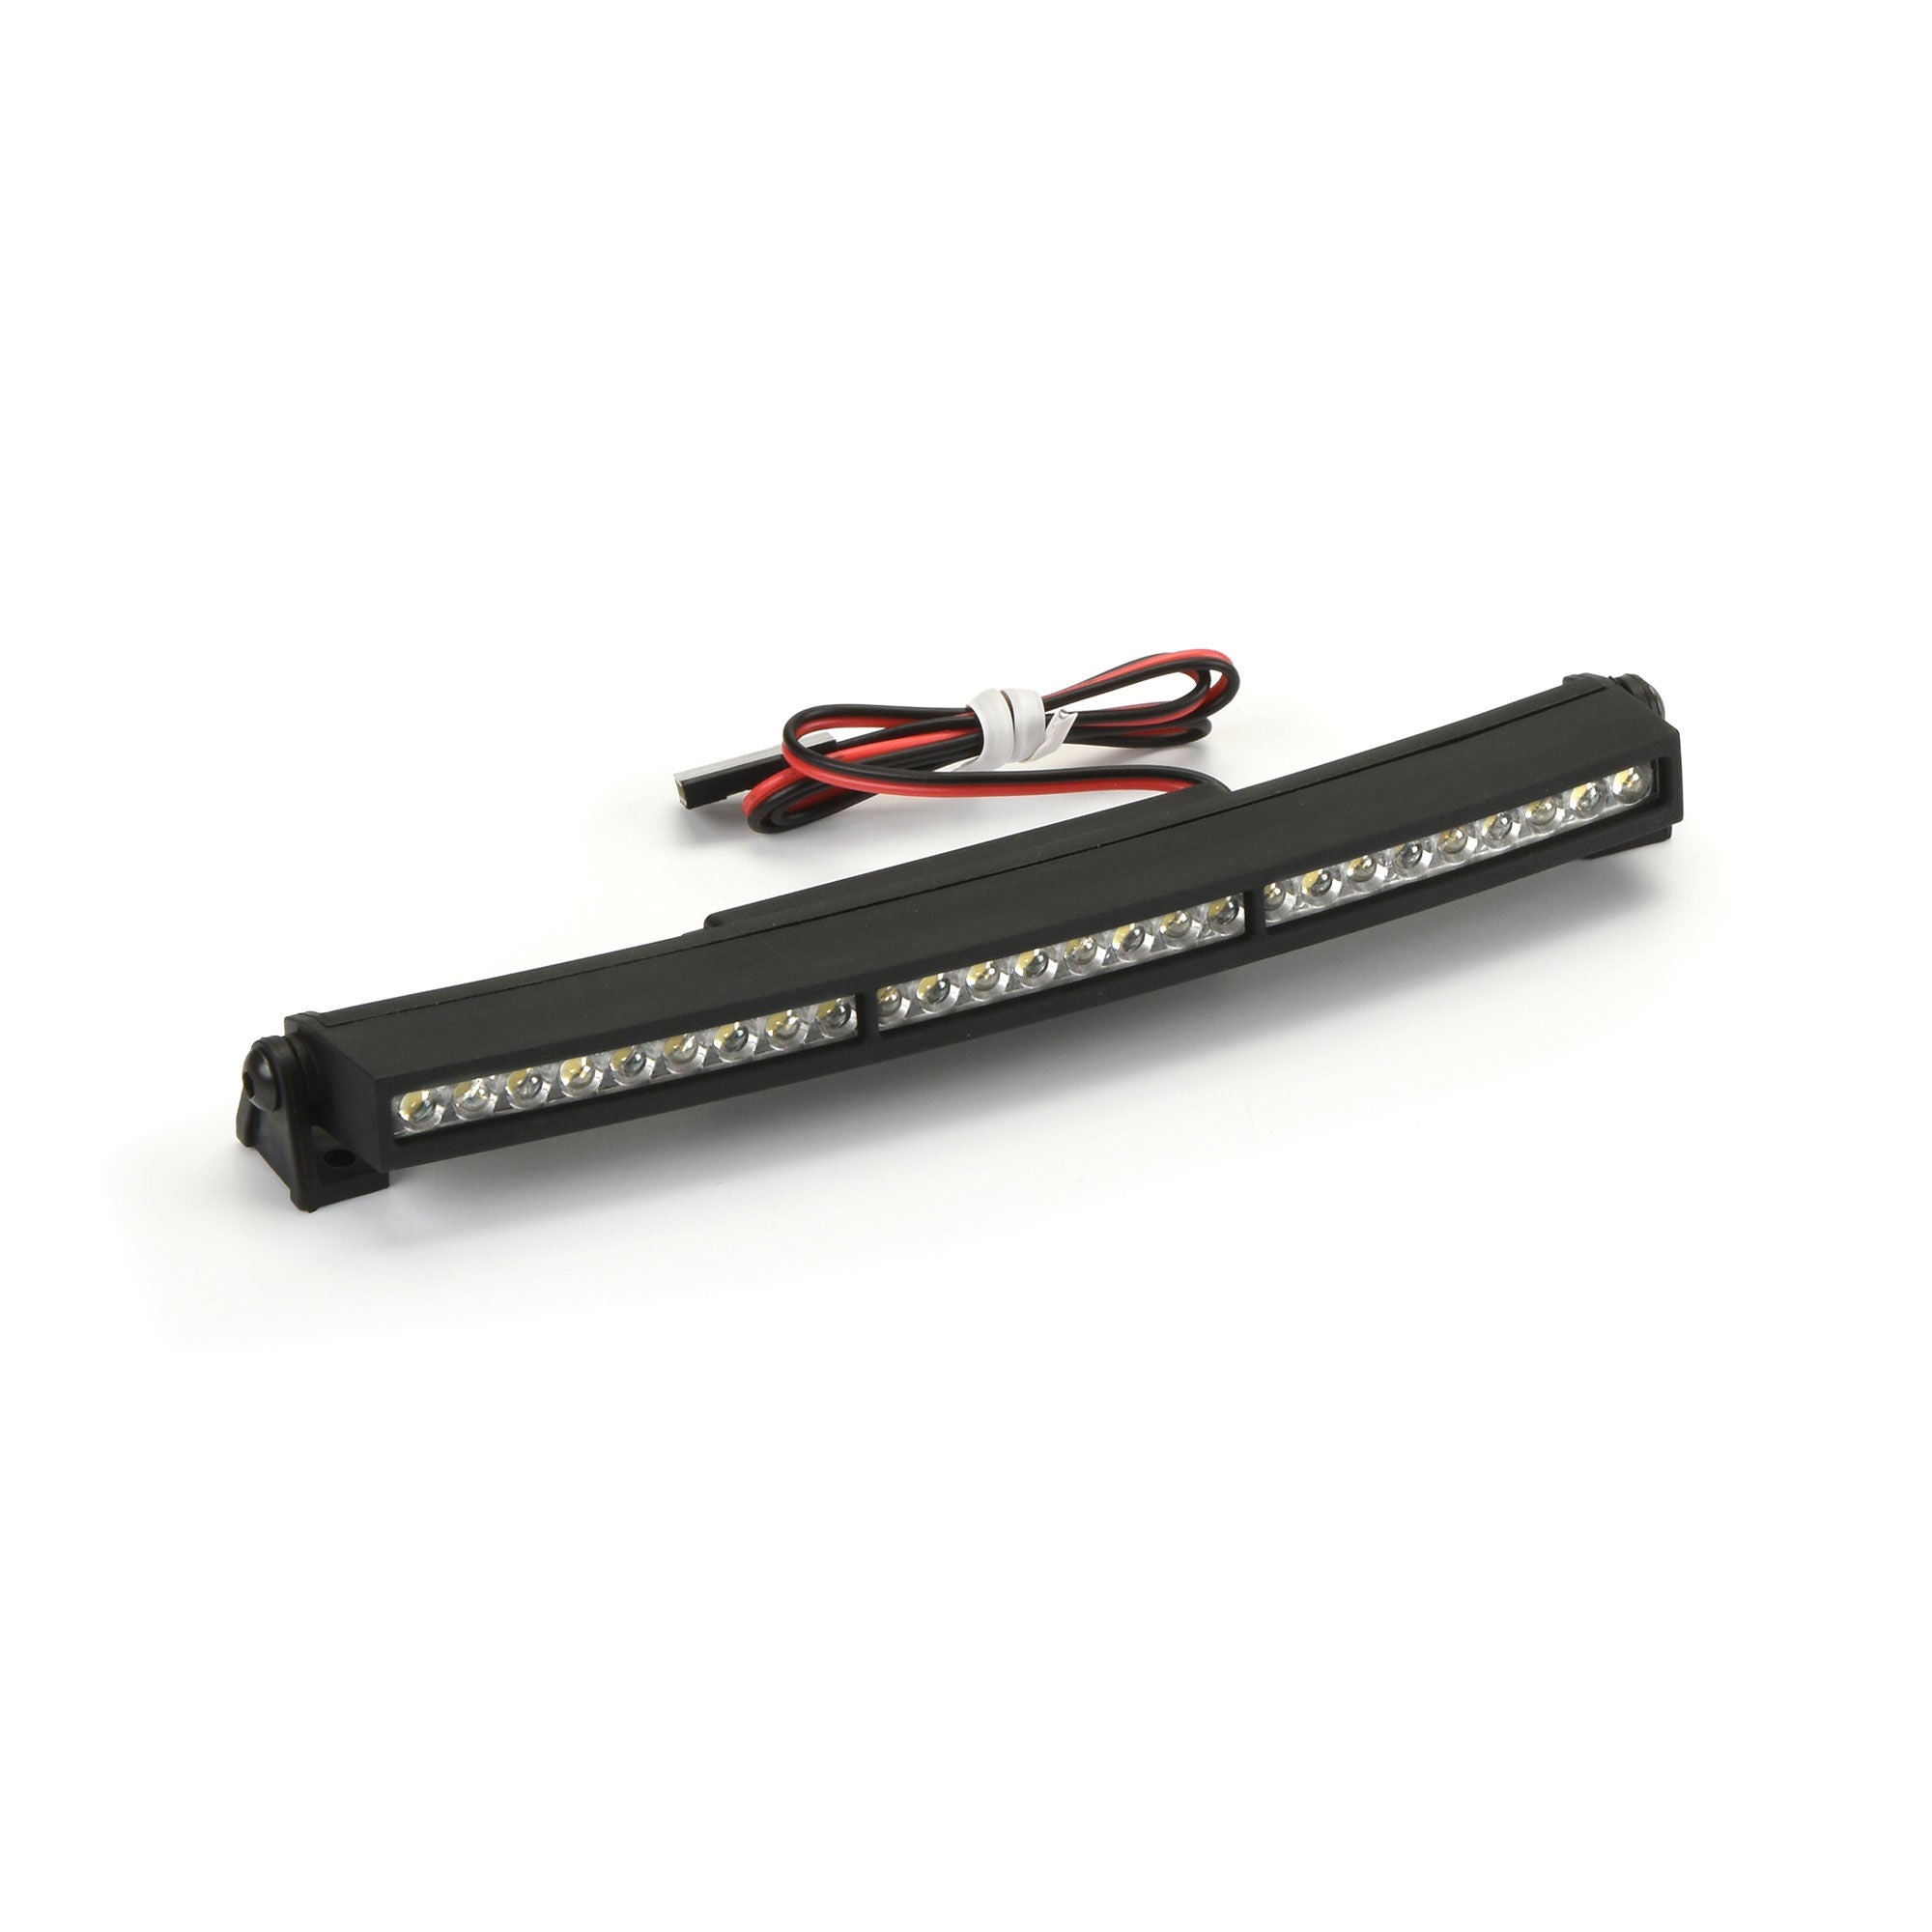 Pro-Line Racing 2 Ultra-Slim LED Light Bar Kit 5V-12V (Straight